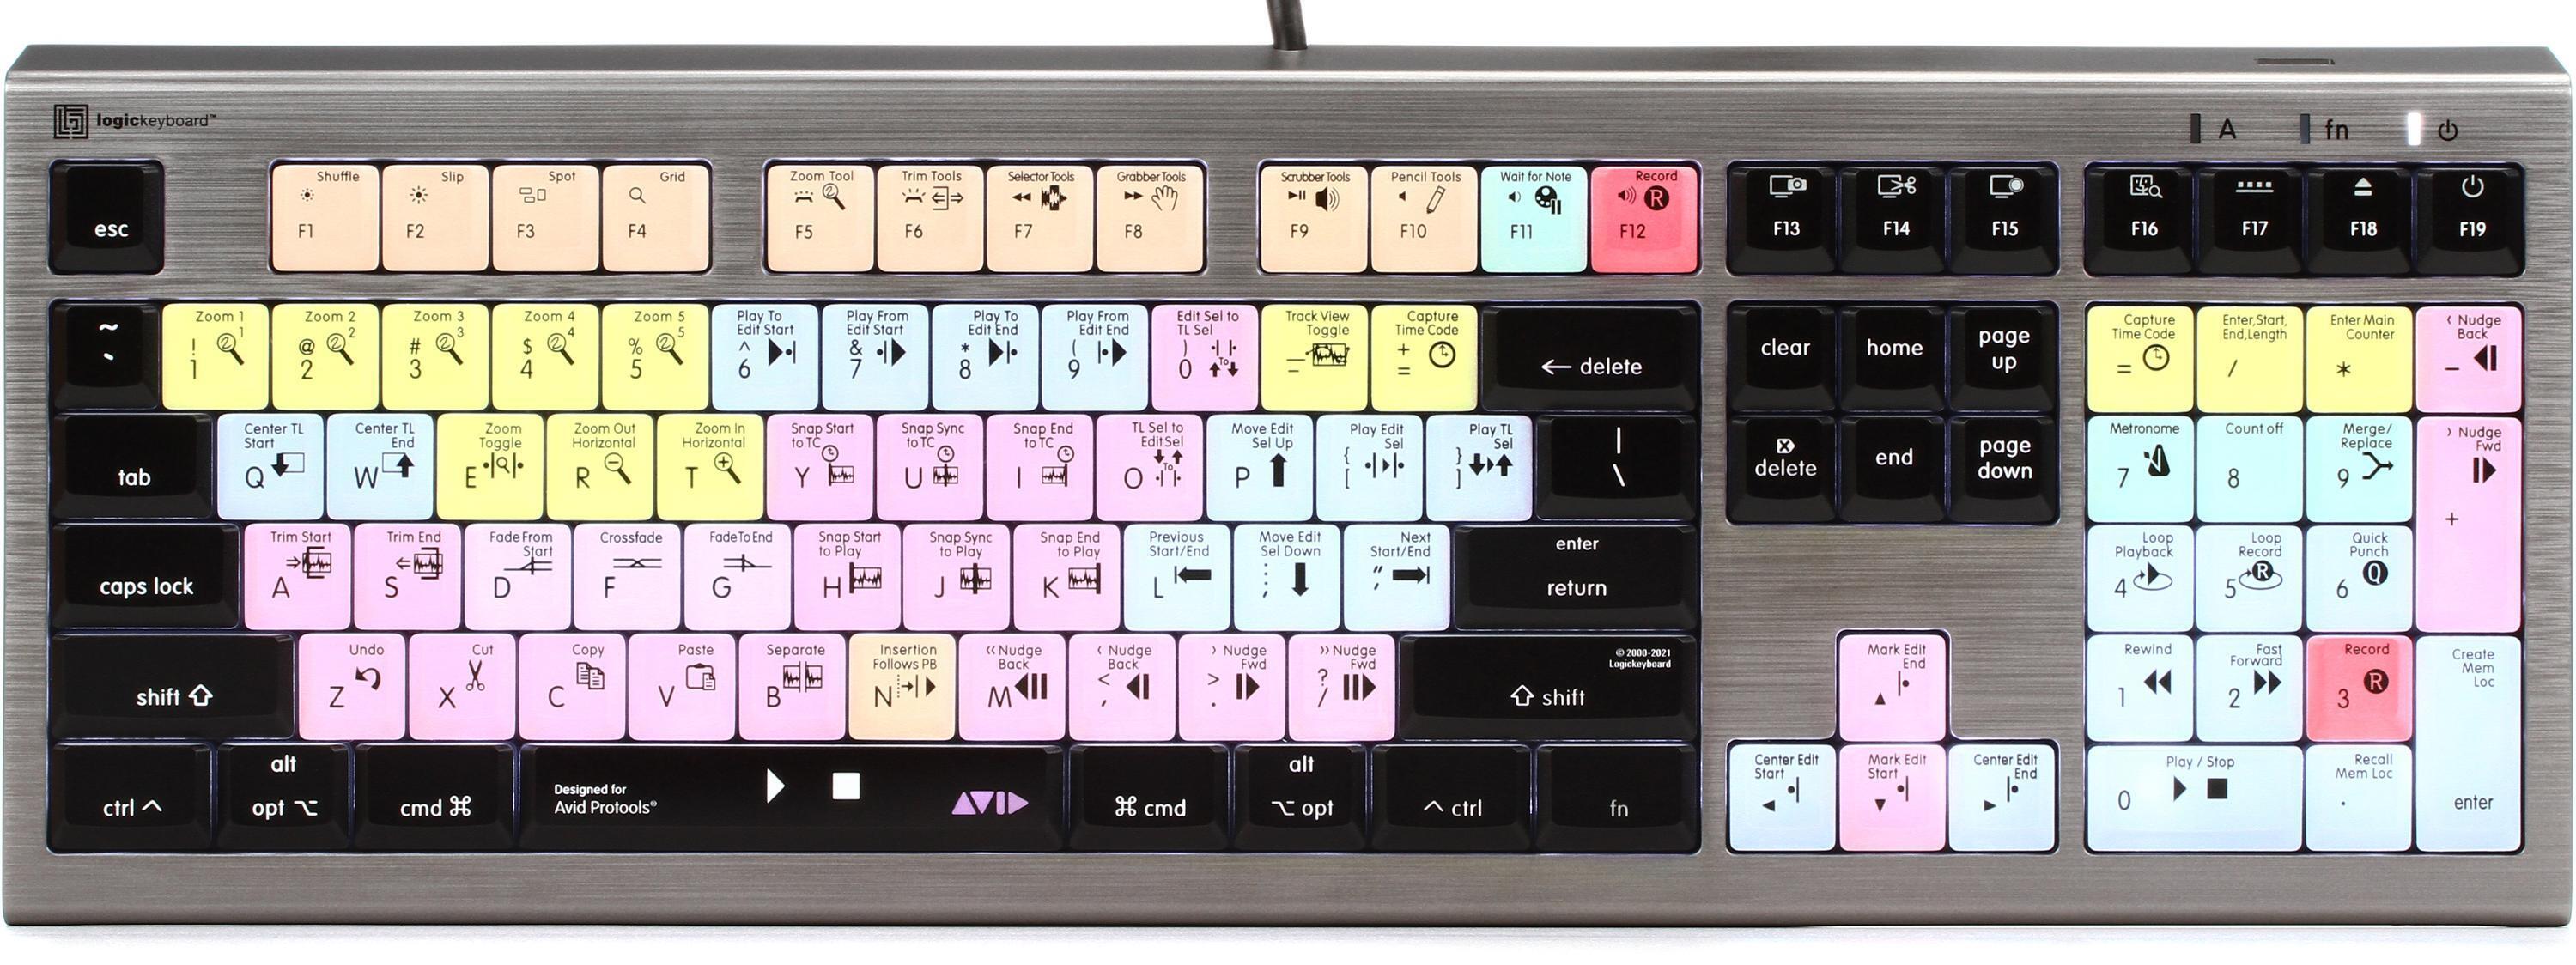 LogicKeyboard Astra 2 Mac Backlit Keyboard - Avid Pro Tools